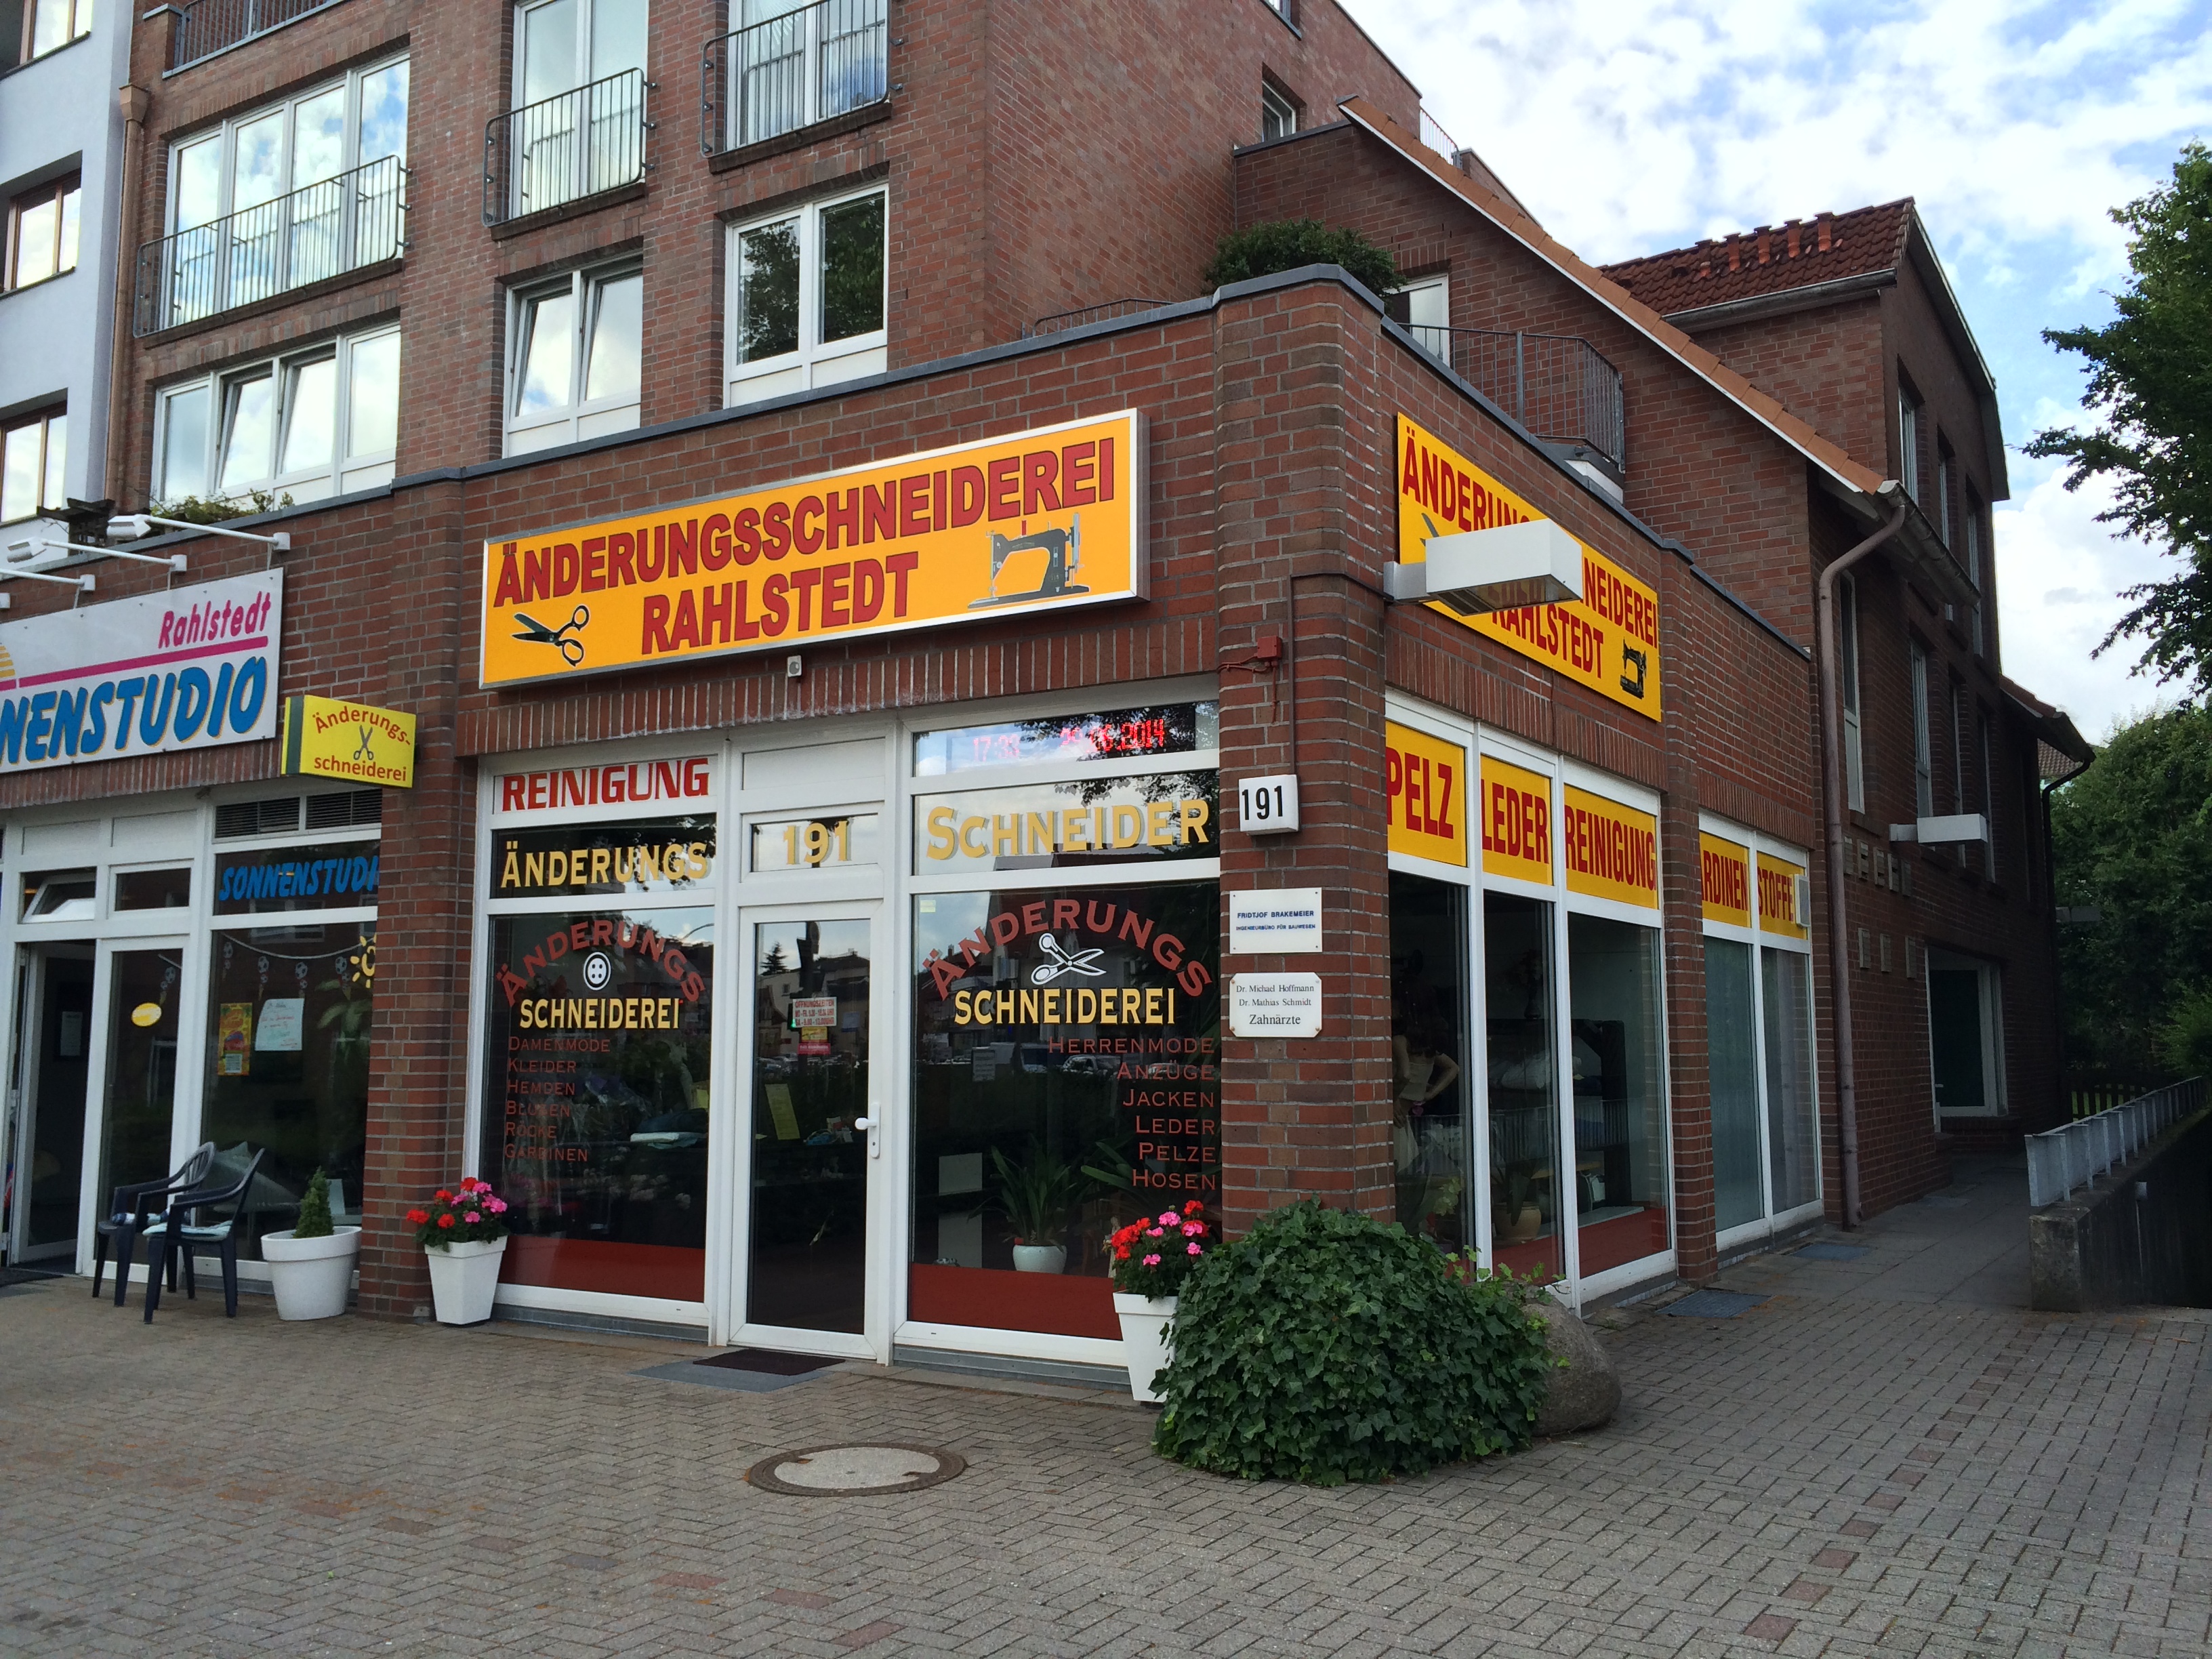 Bild 3 Änderungsschneiderei Rahlstedt in Hamburg